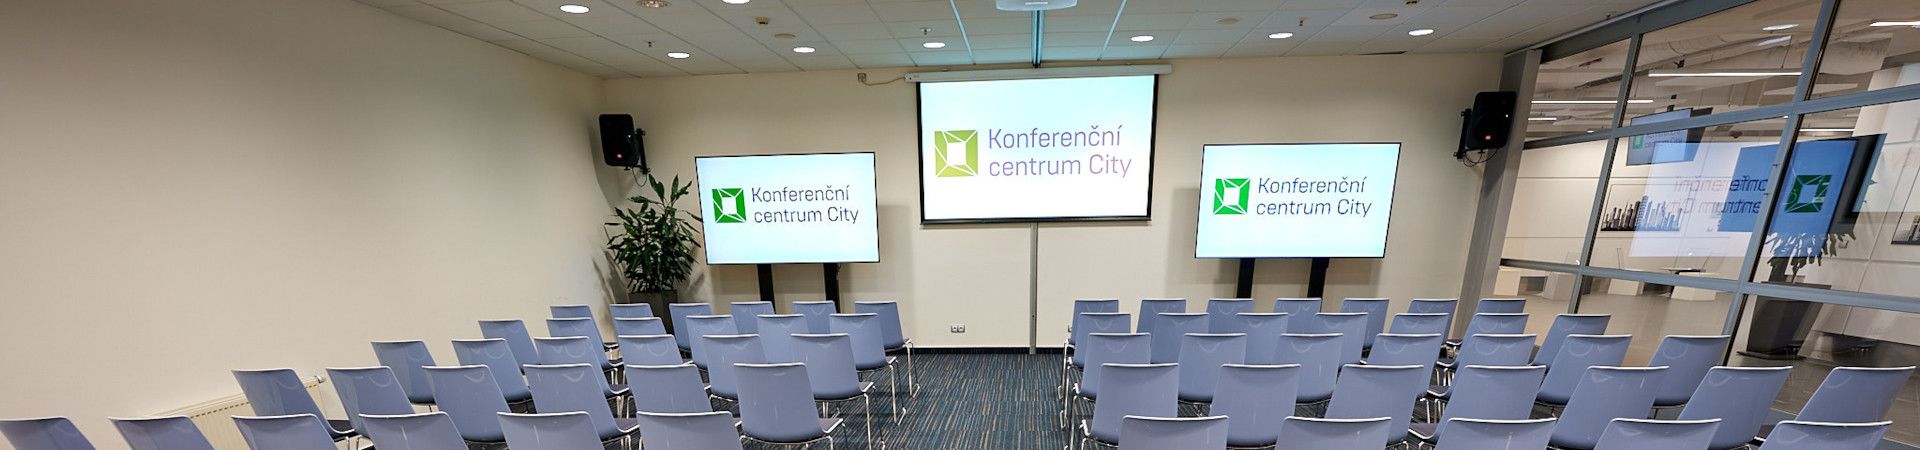 Konferenční centrum City - Konferenční sál Panorama